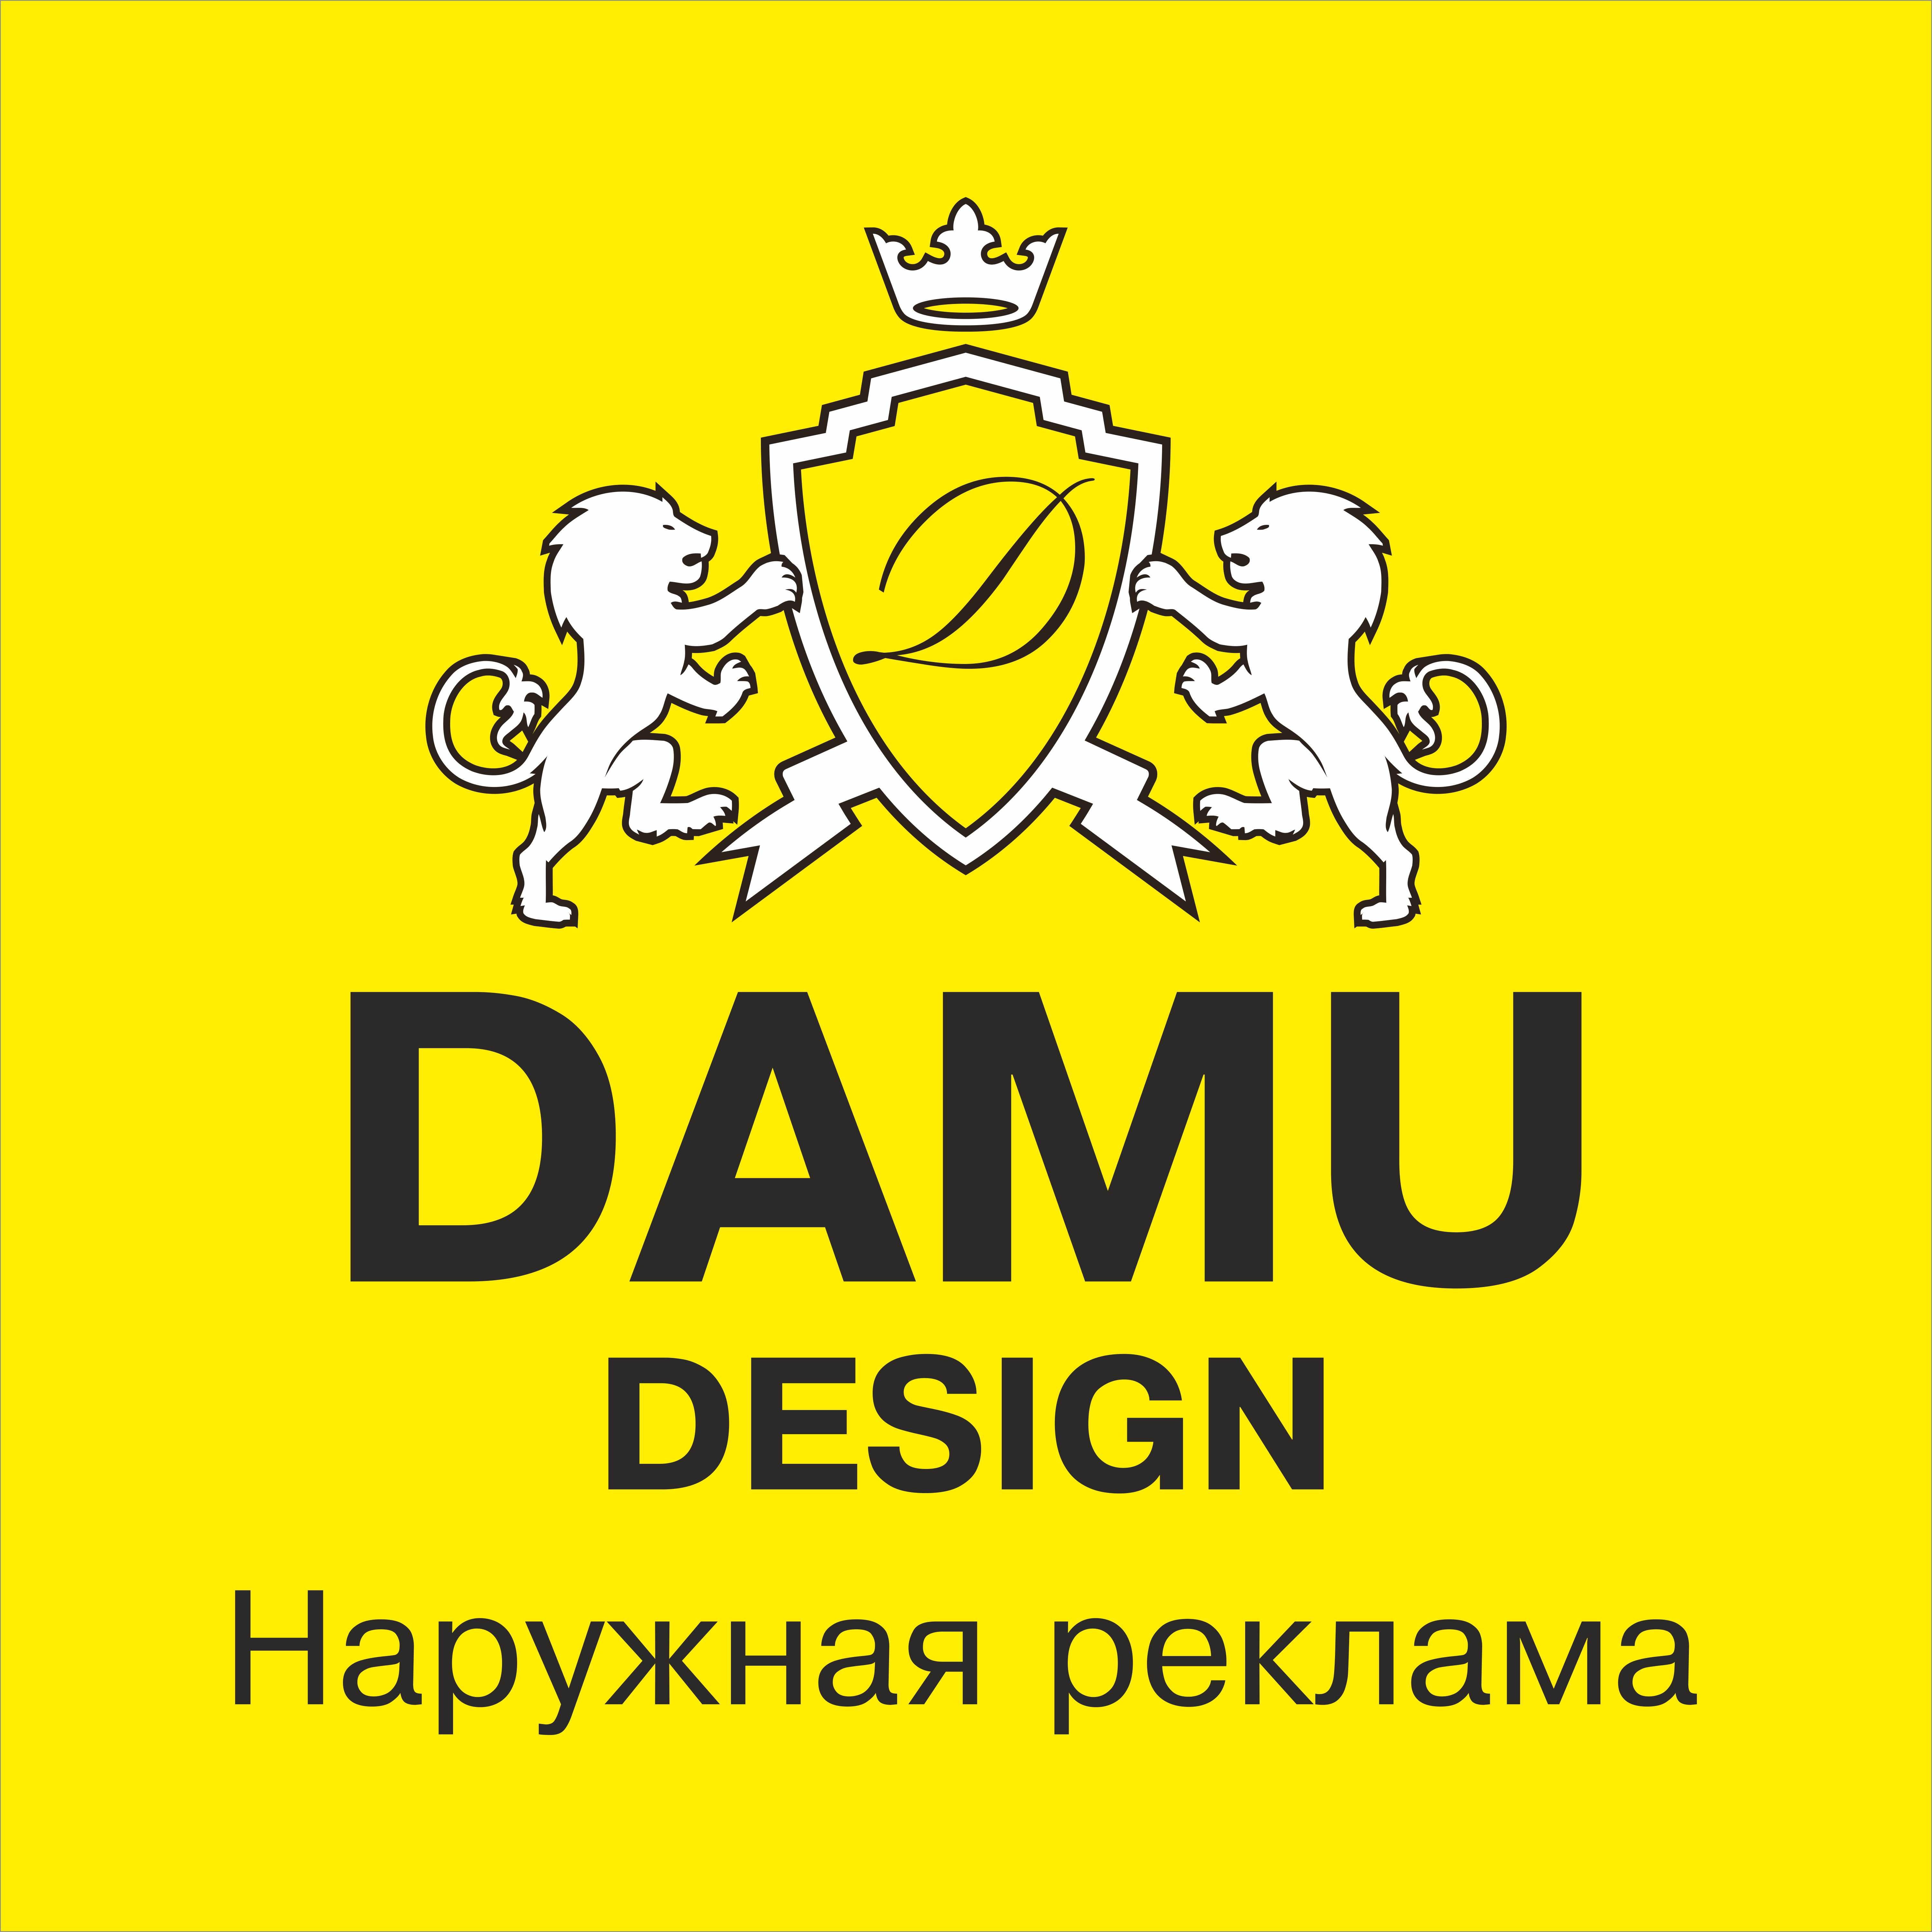 Damu Design Astana